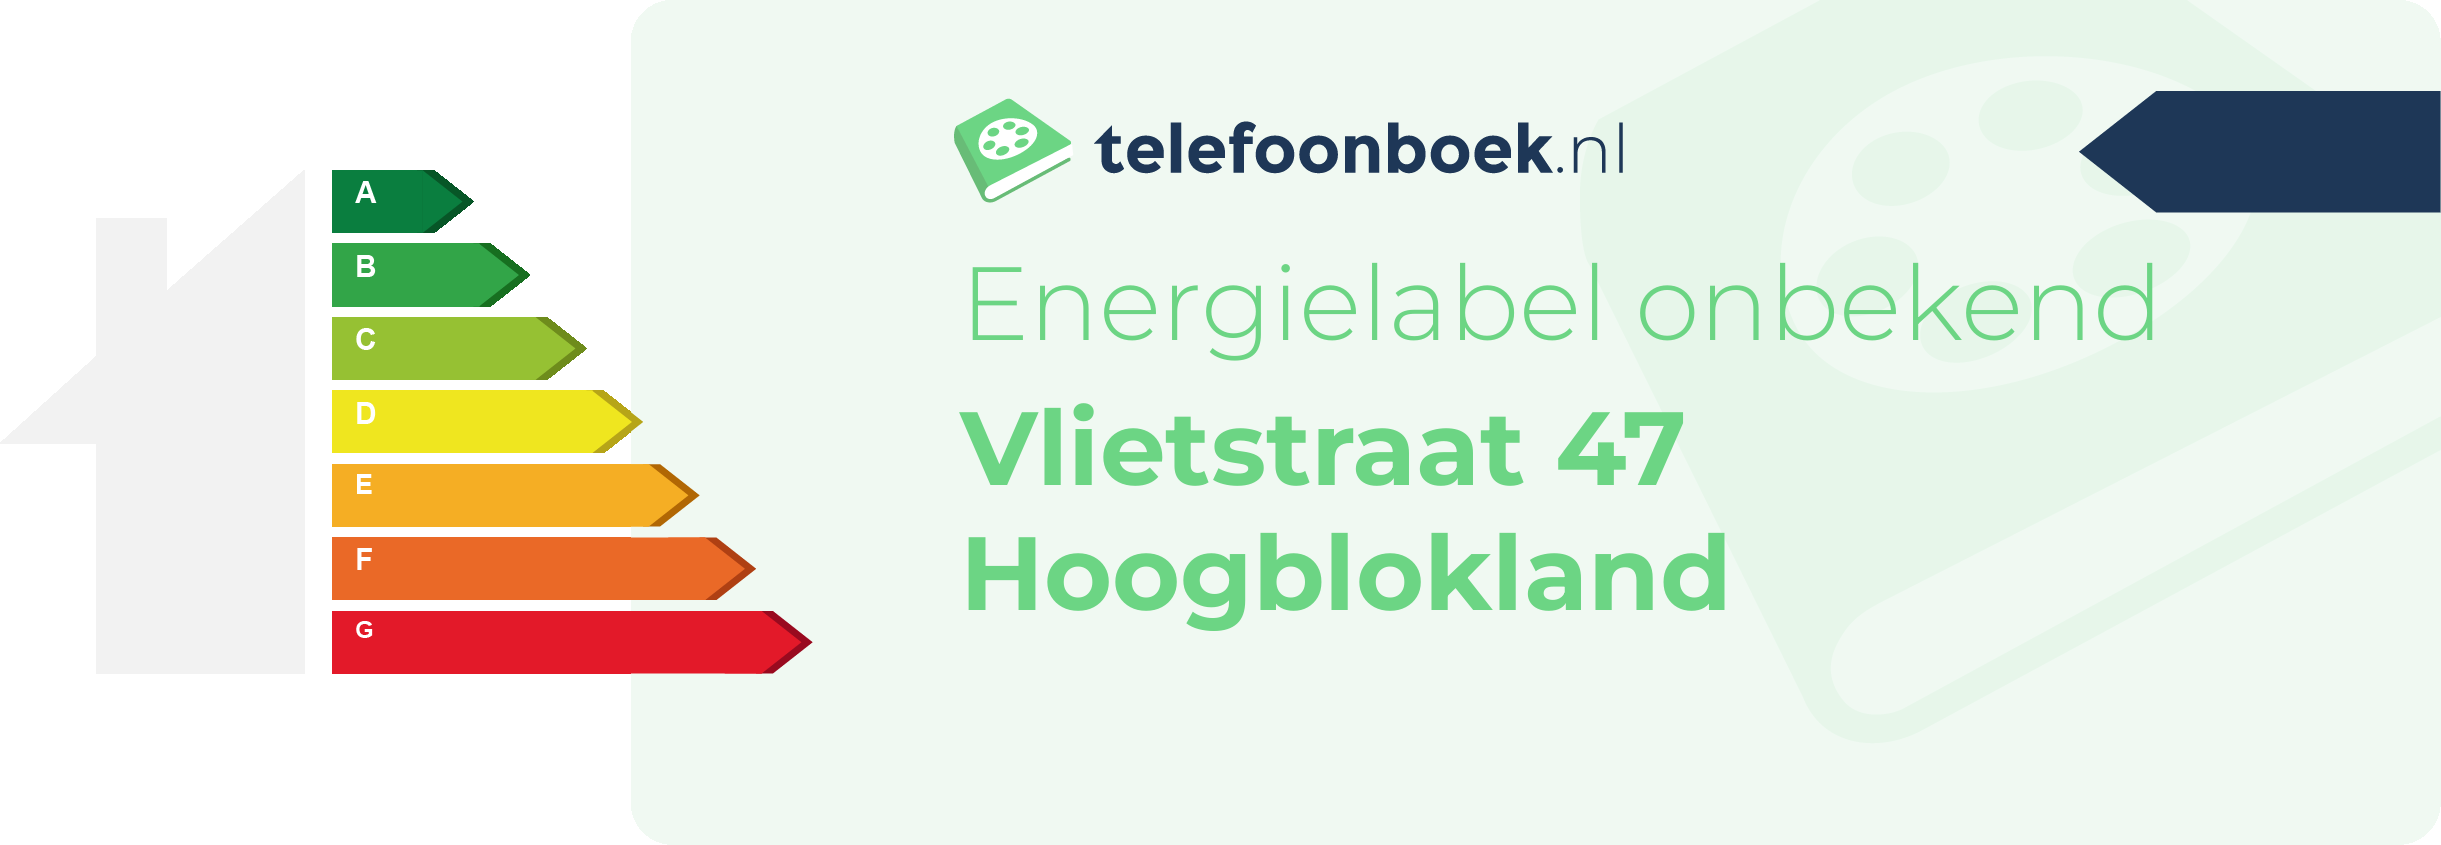 Energielabel Vlietstraat 47 Hoogblokland